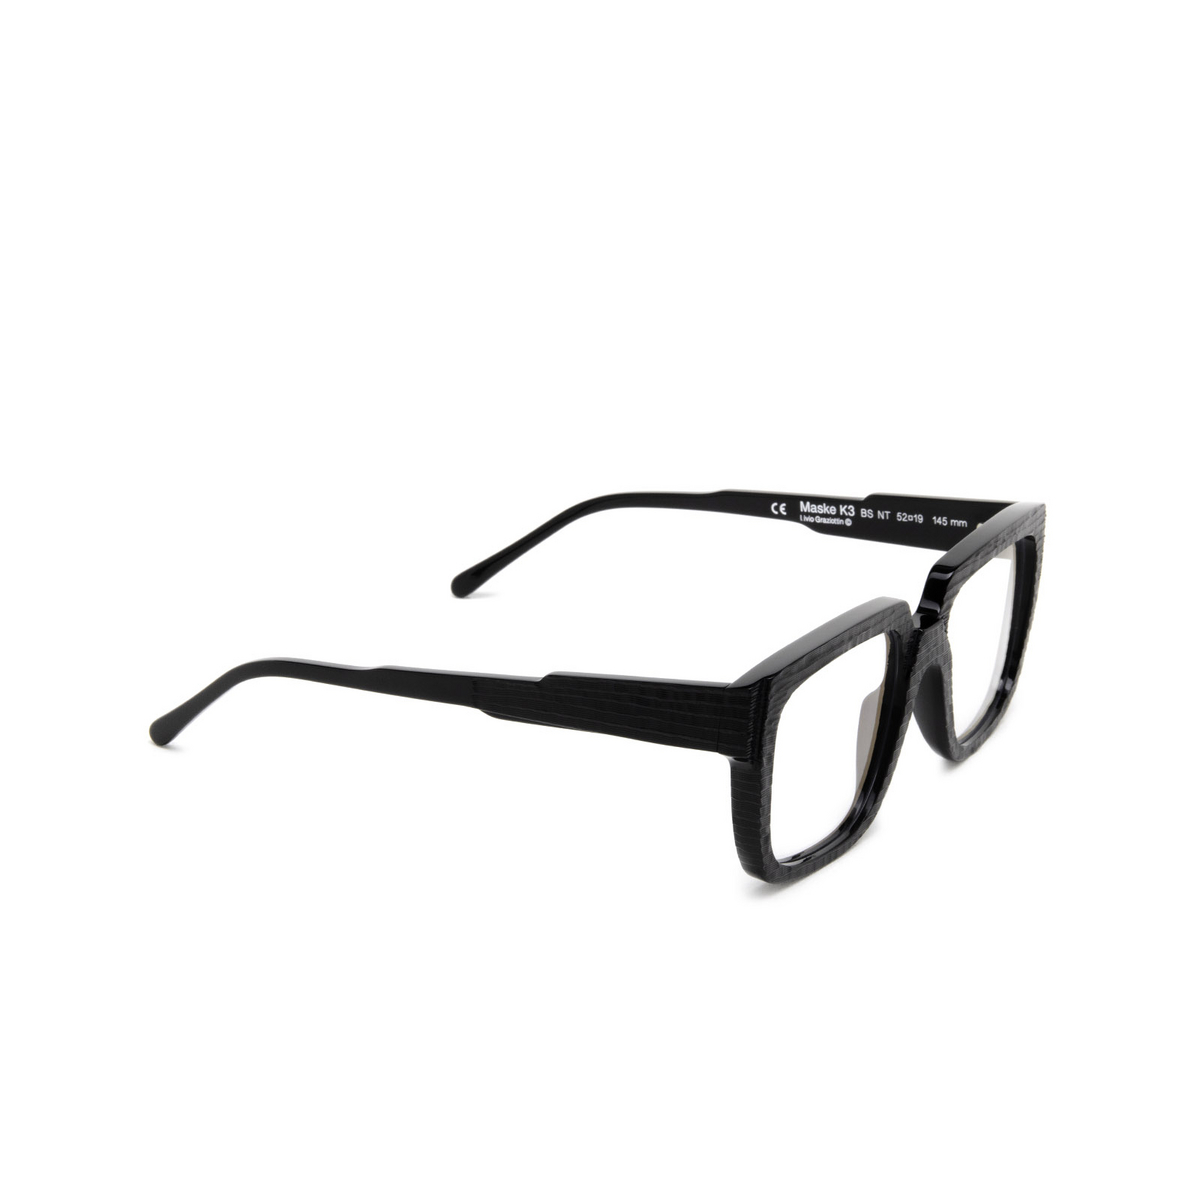 Kuboraum® Square Eyeglasses: K3 color Black Shine & Handcraft Finishing Bs Nt - three-quarters view.